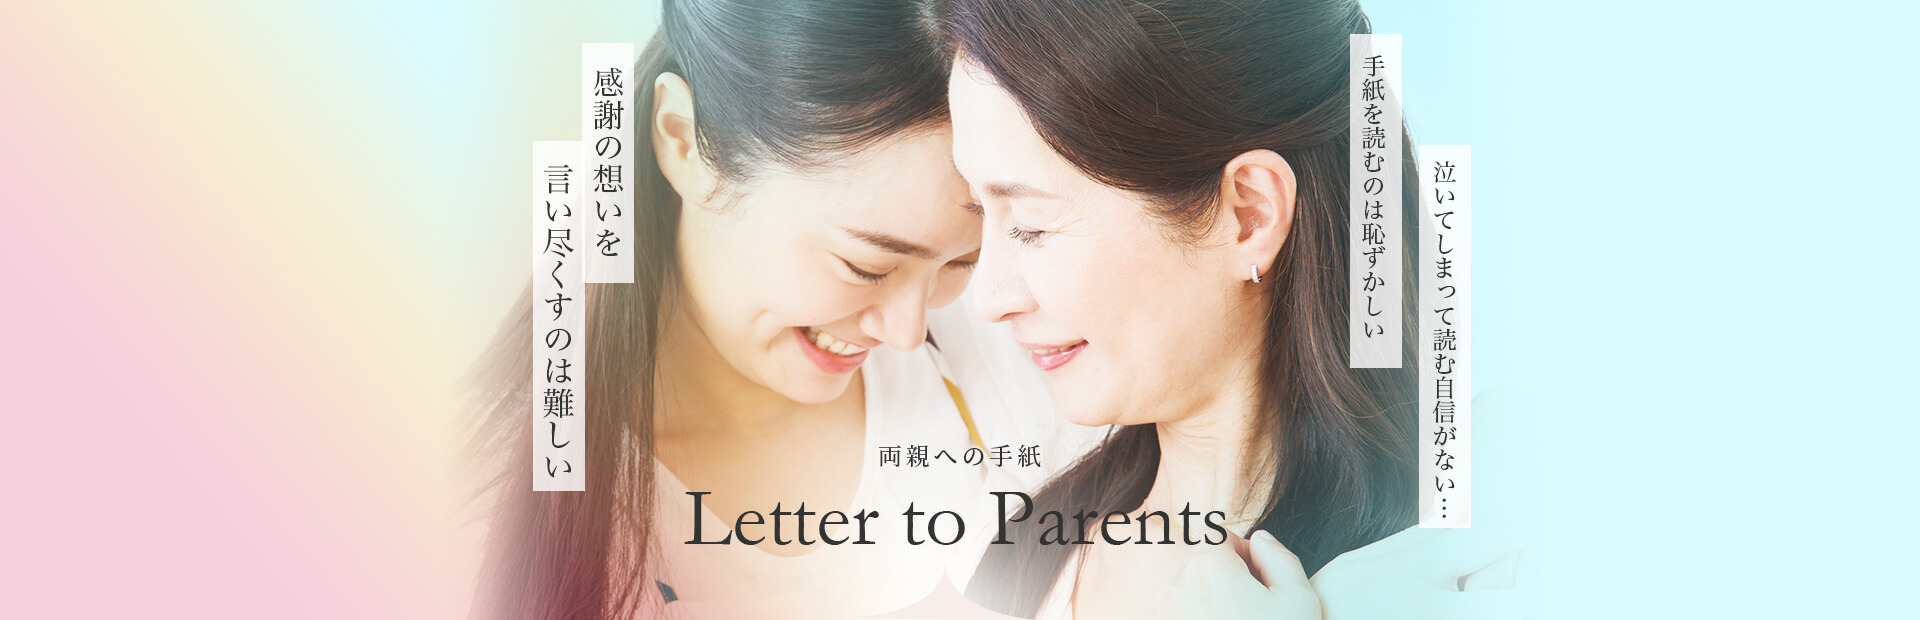 両親への手紙